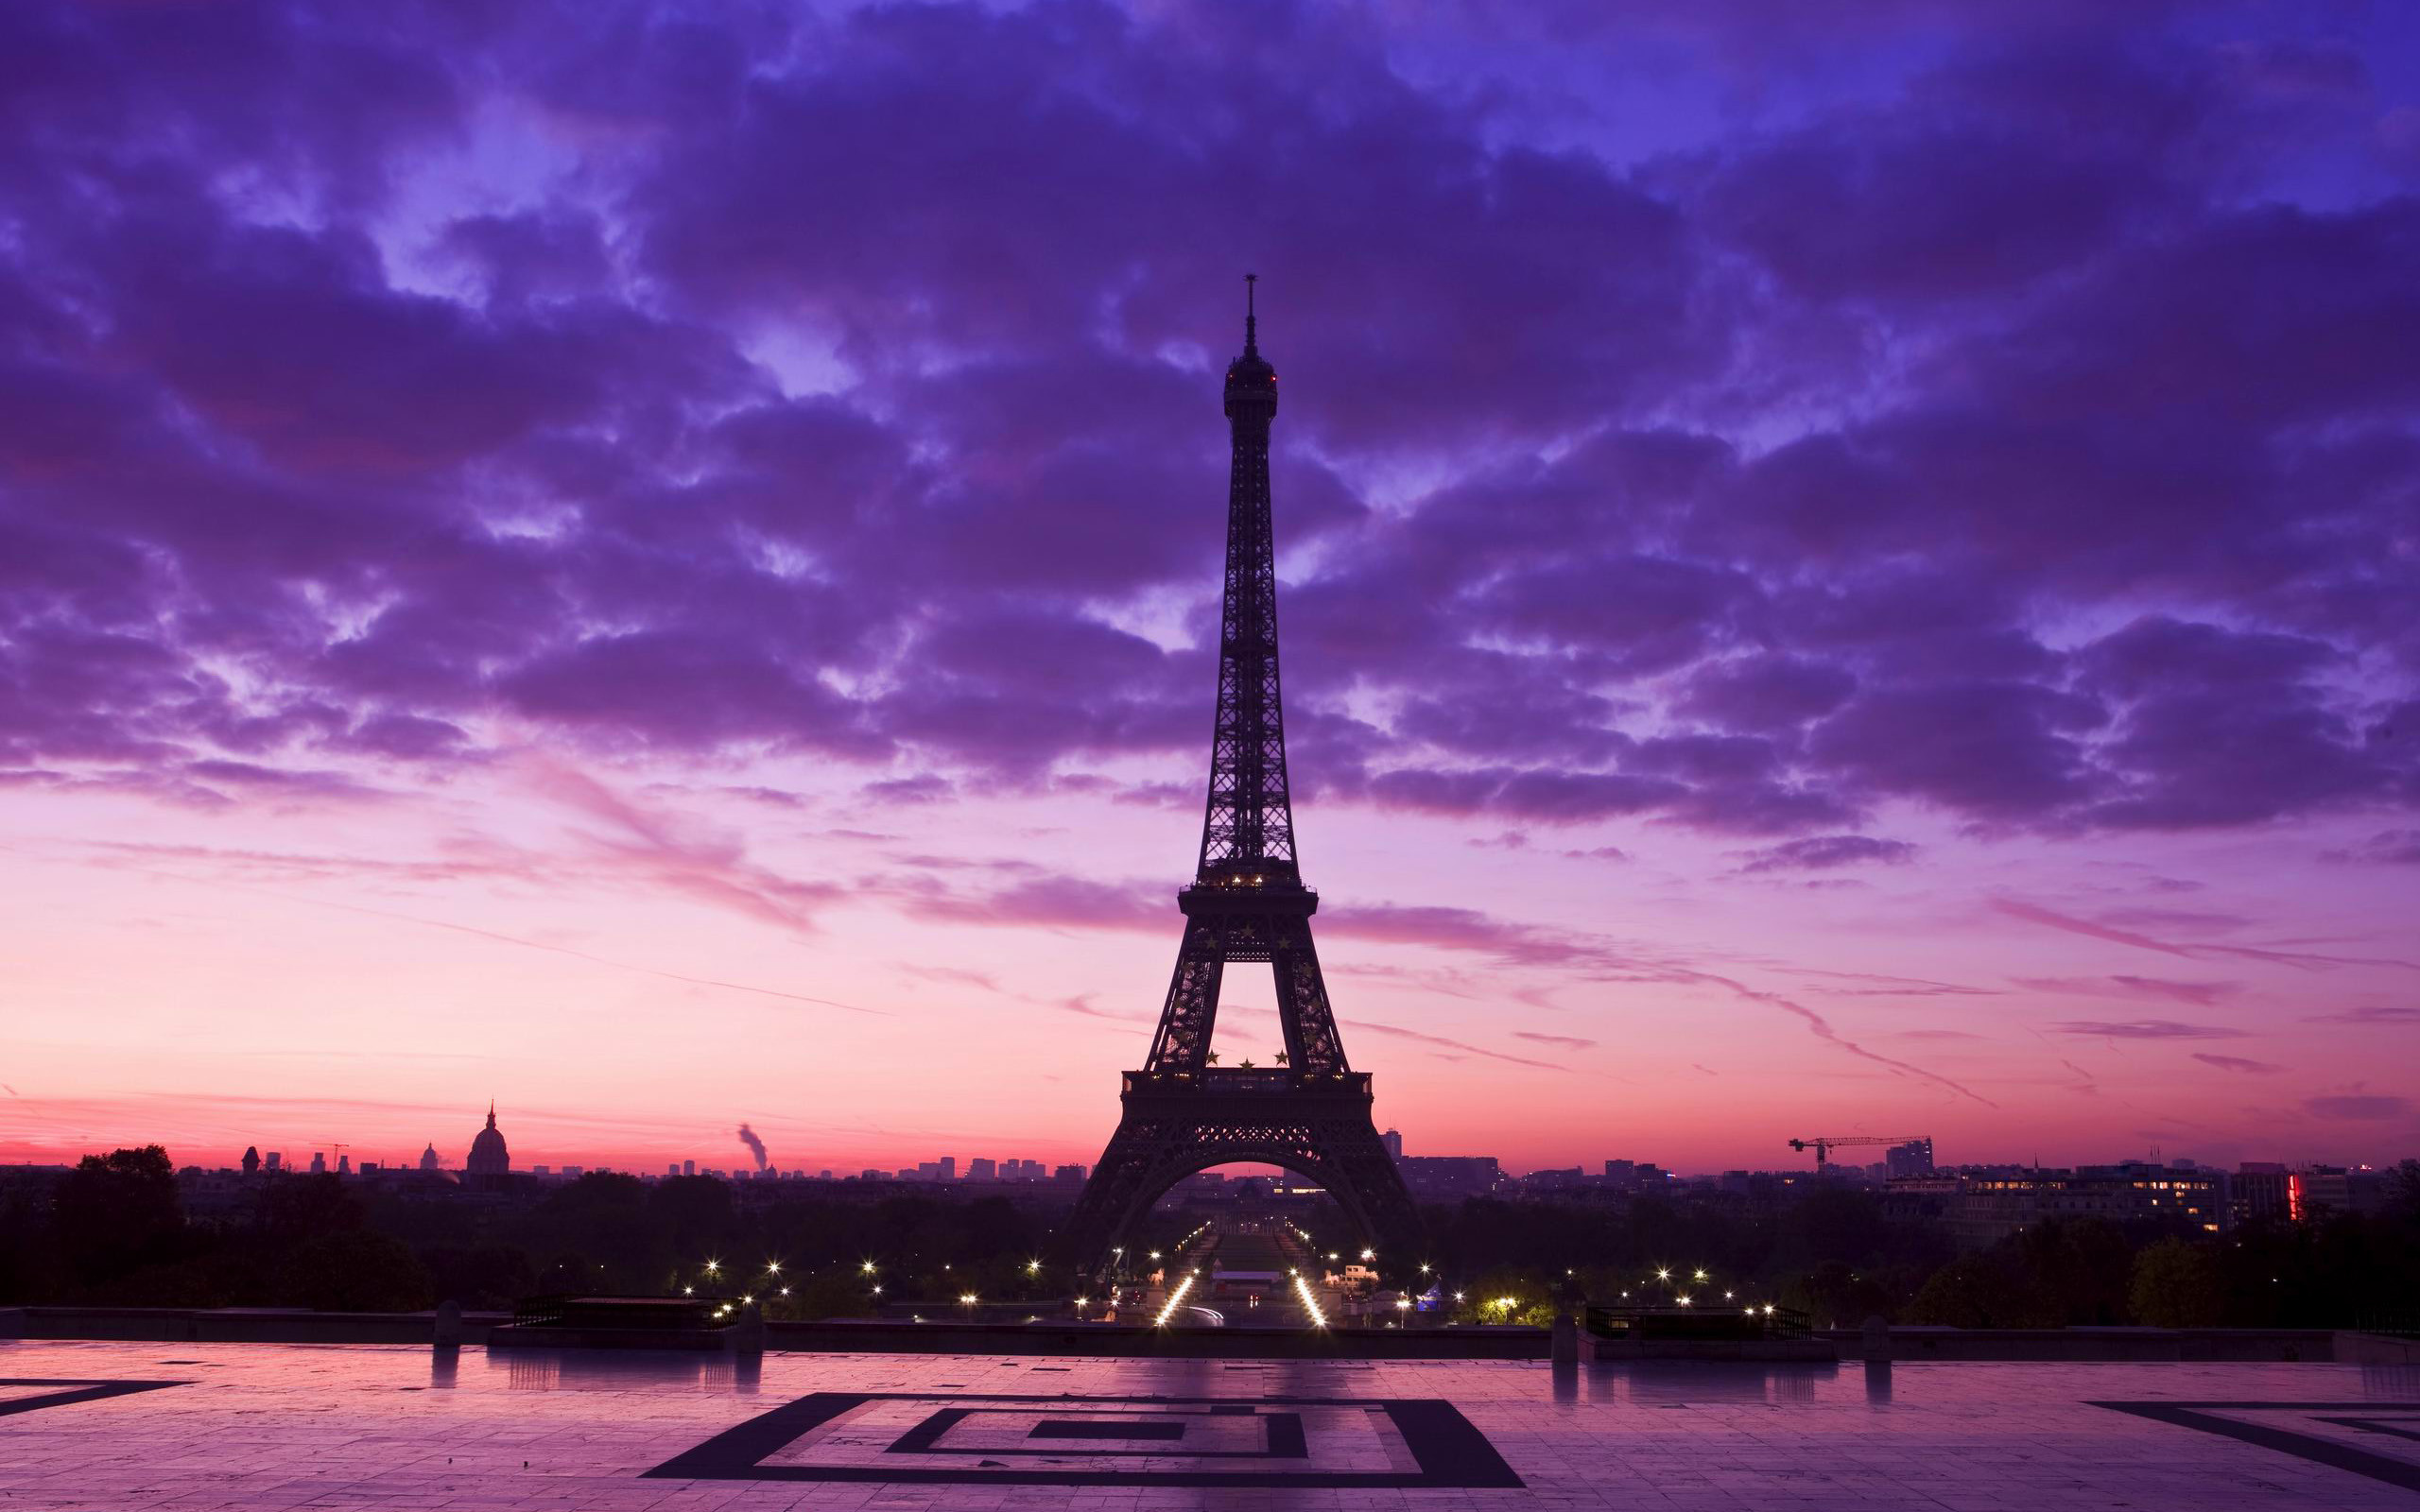 Paris Photos, Download The BEST Free Paris Stock Photos & HD Images